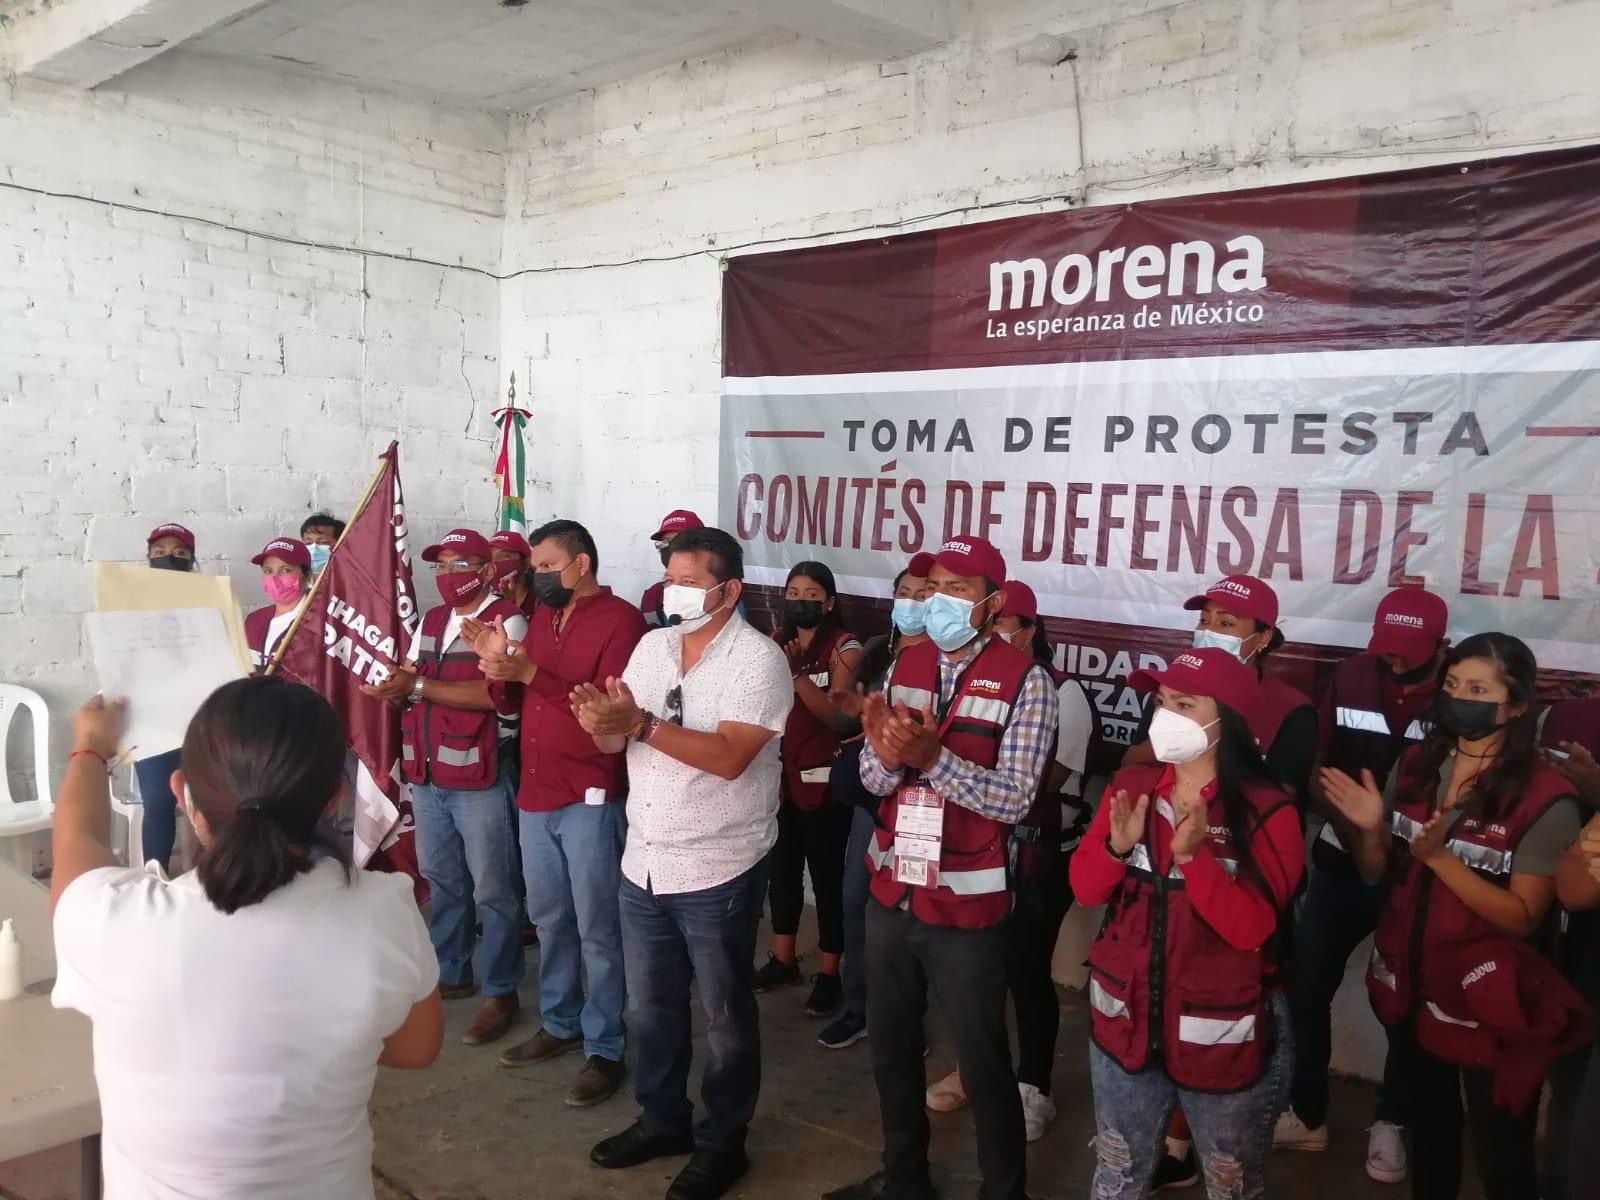 Tribunal federal anula triunfo de Morena en Salina Cruz, Oaxaca, y ordena nuevas elecciones